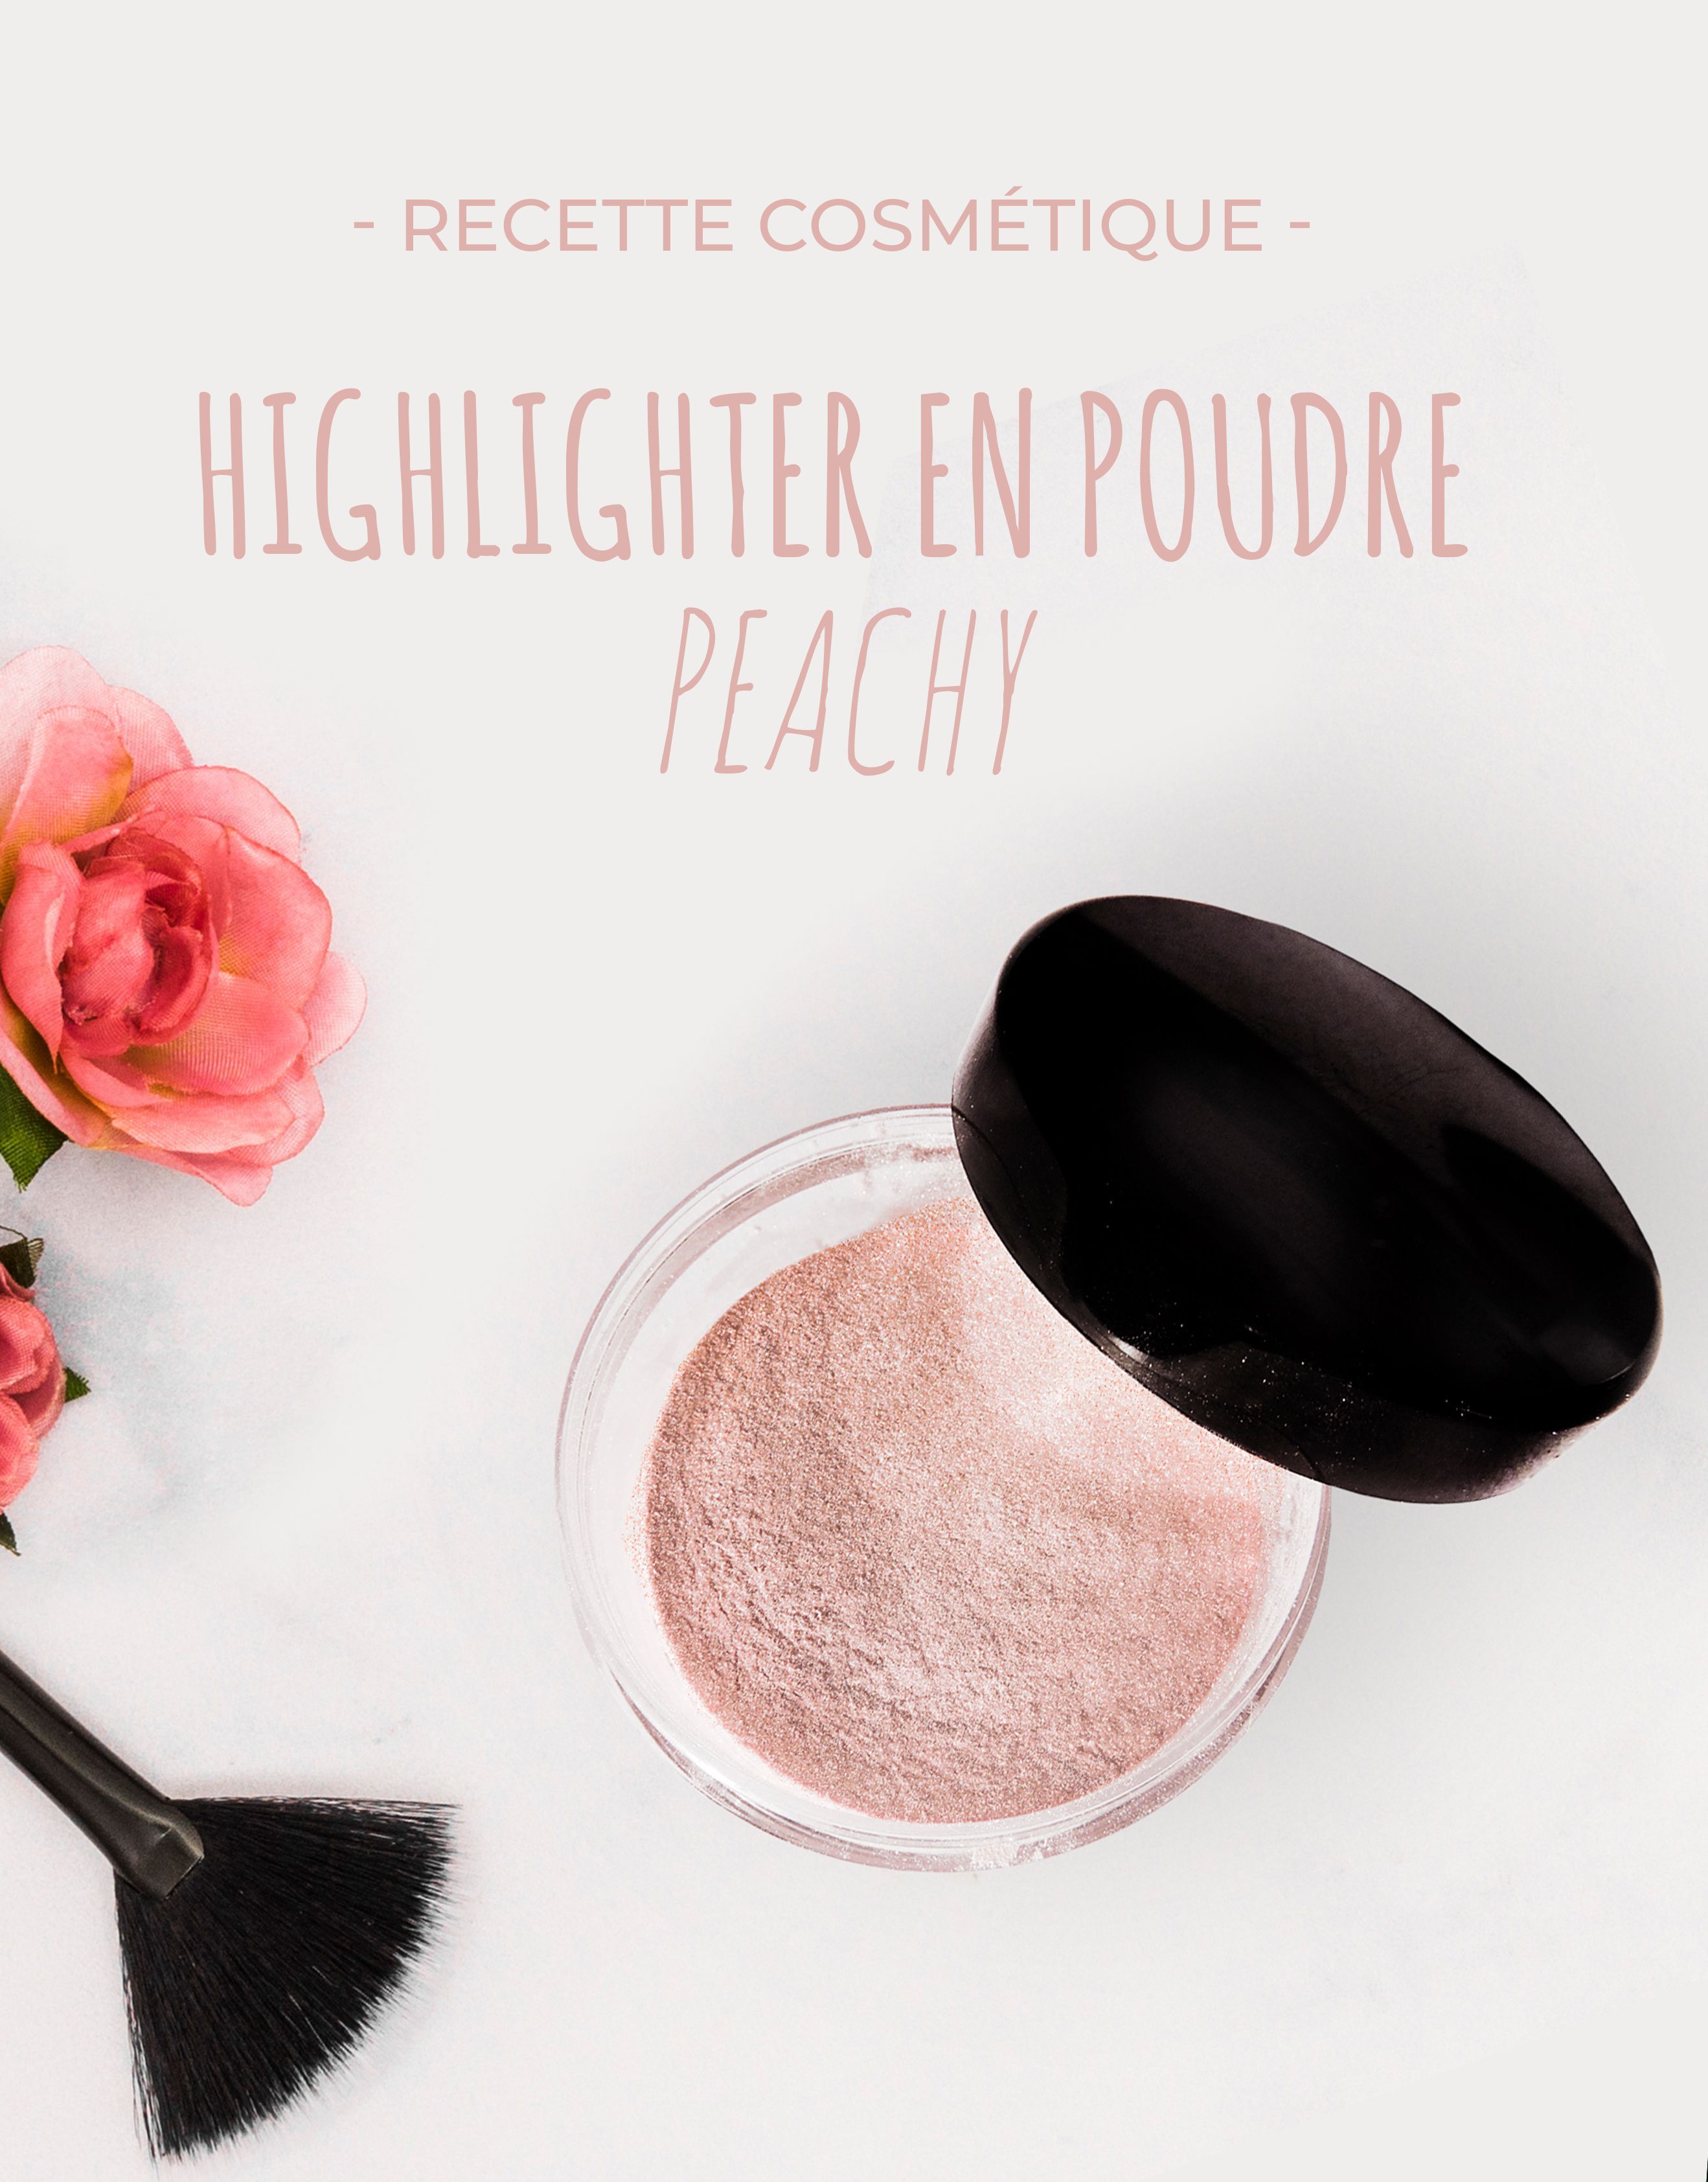 Recette : Highlighter en poudre - Peachy - Recette : Highlighter en poudre - Peachy -   16 diy Facile maquillage ideas